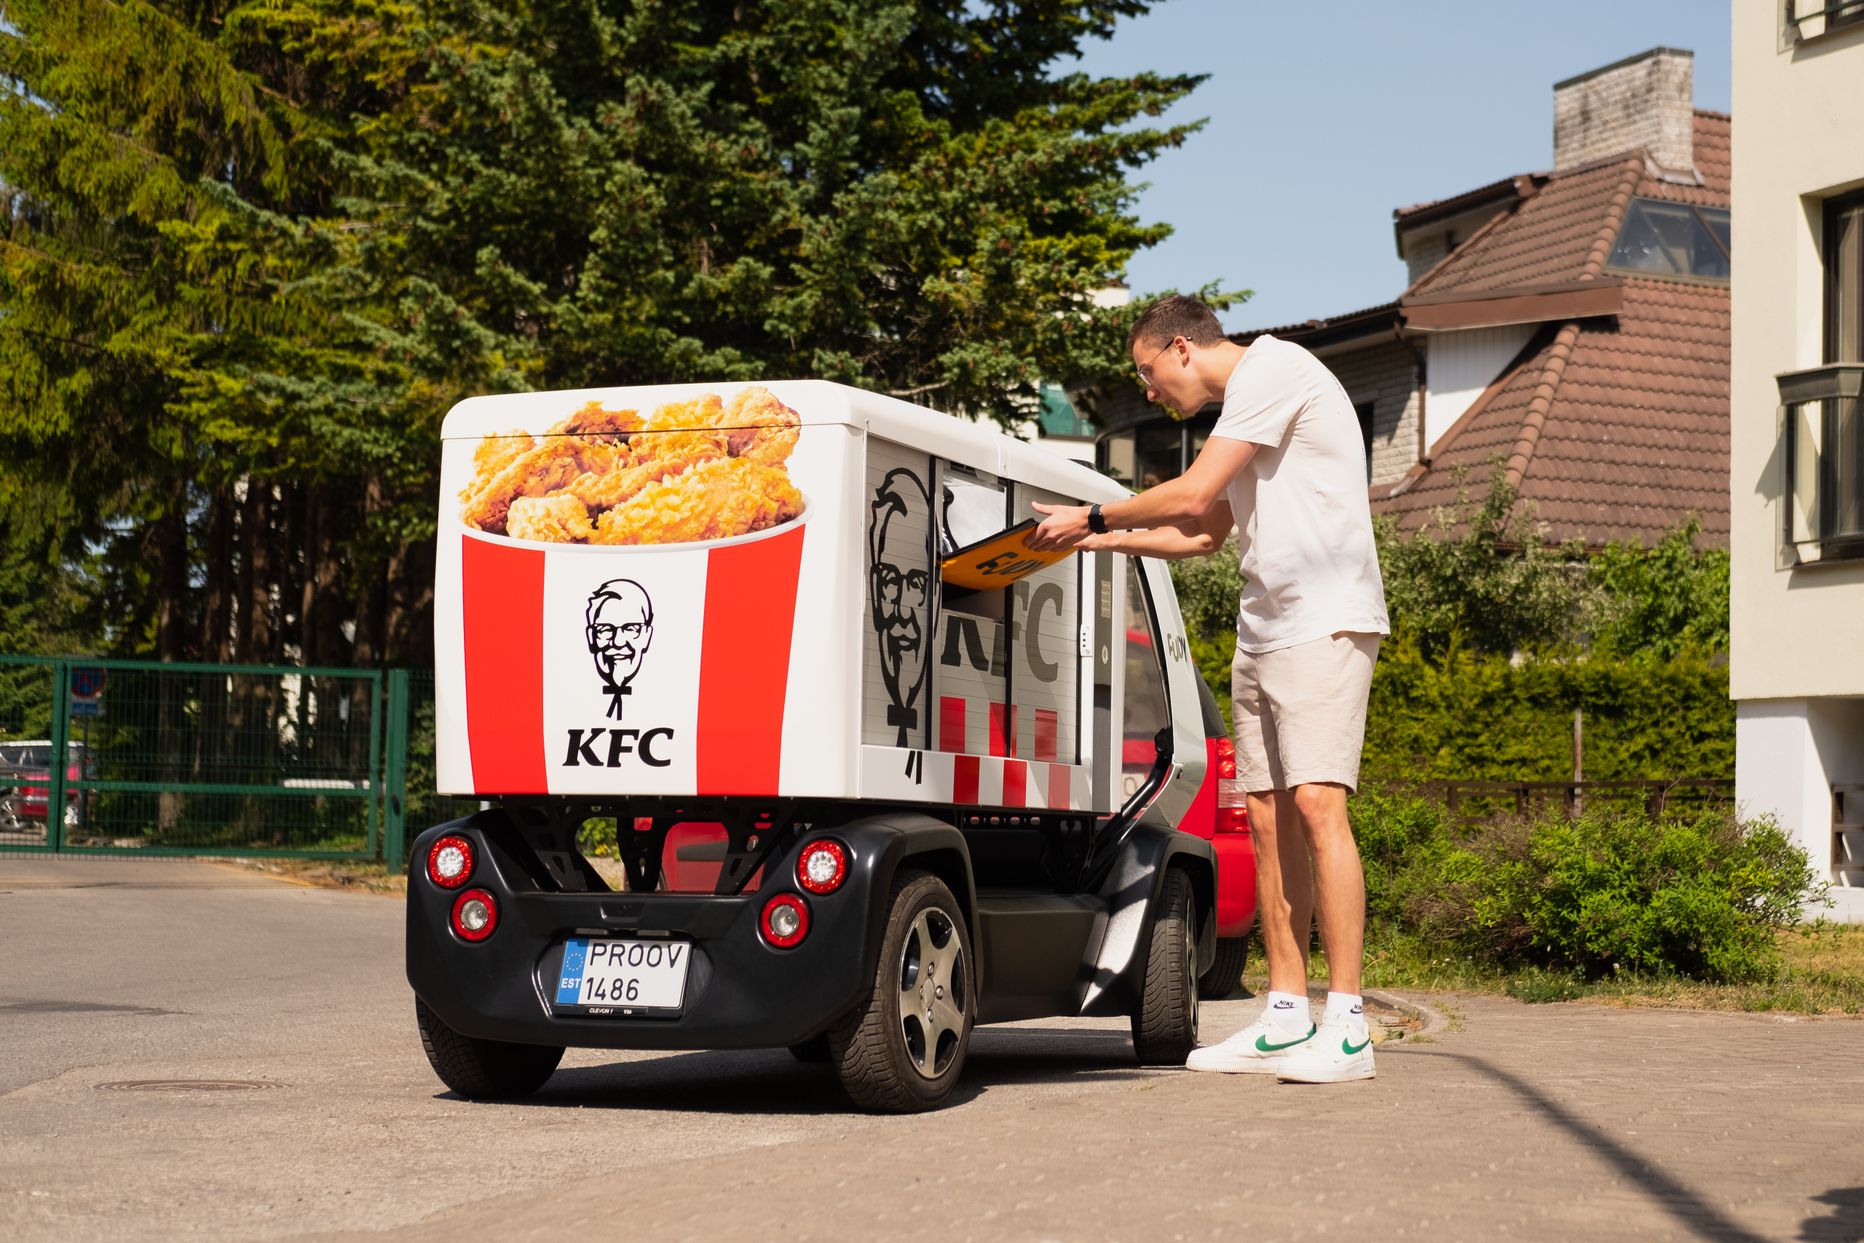 15 июня в Таллинне состоялся тестовый день по доставке еды роботами-курьерами компании Clevon.